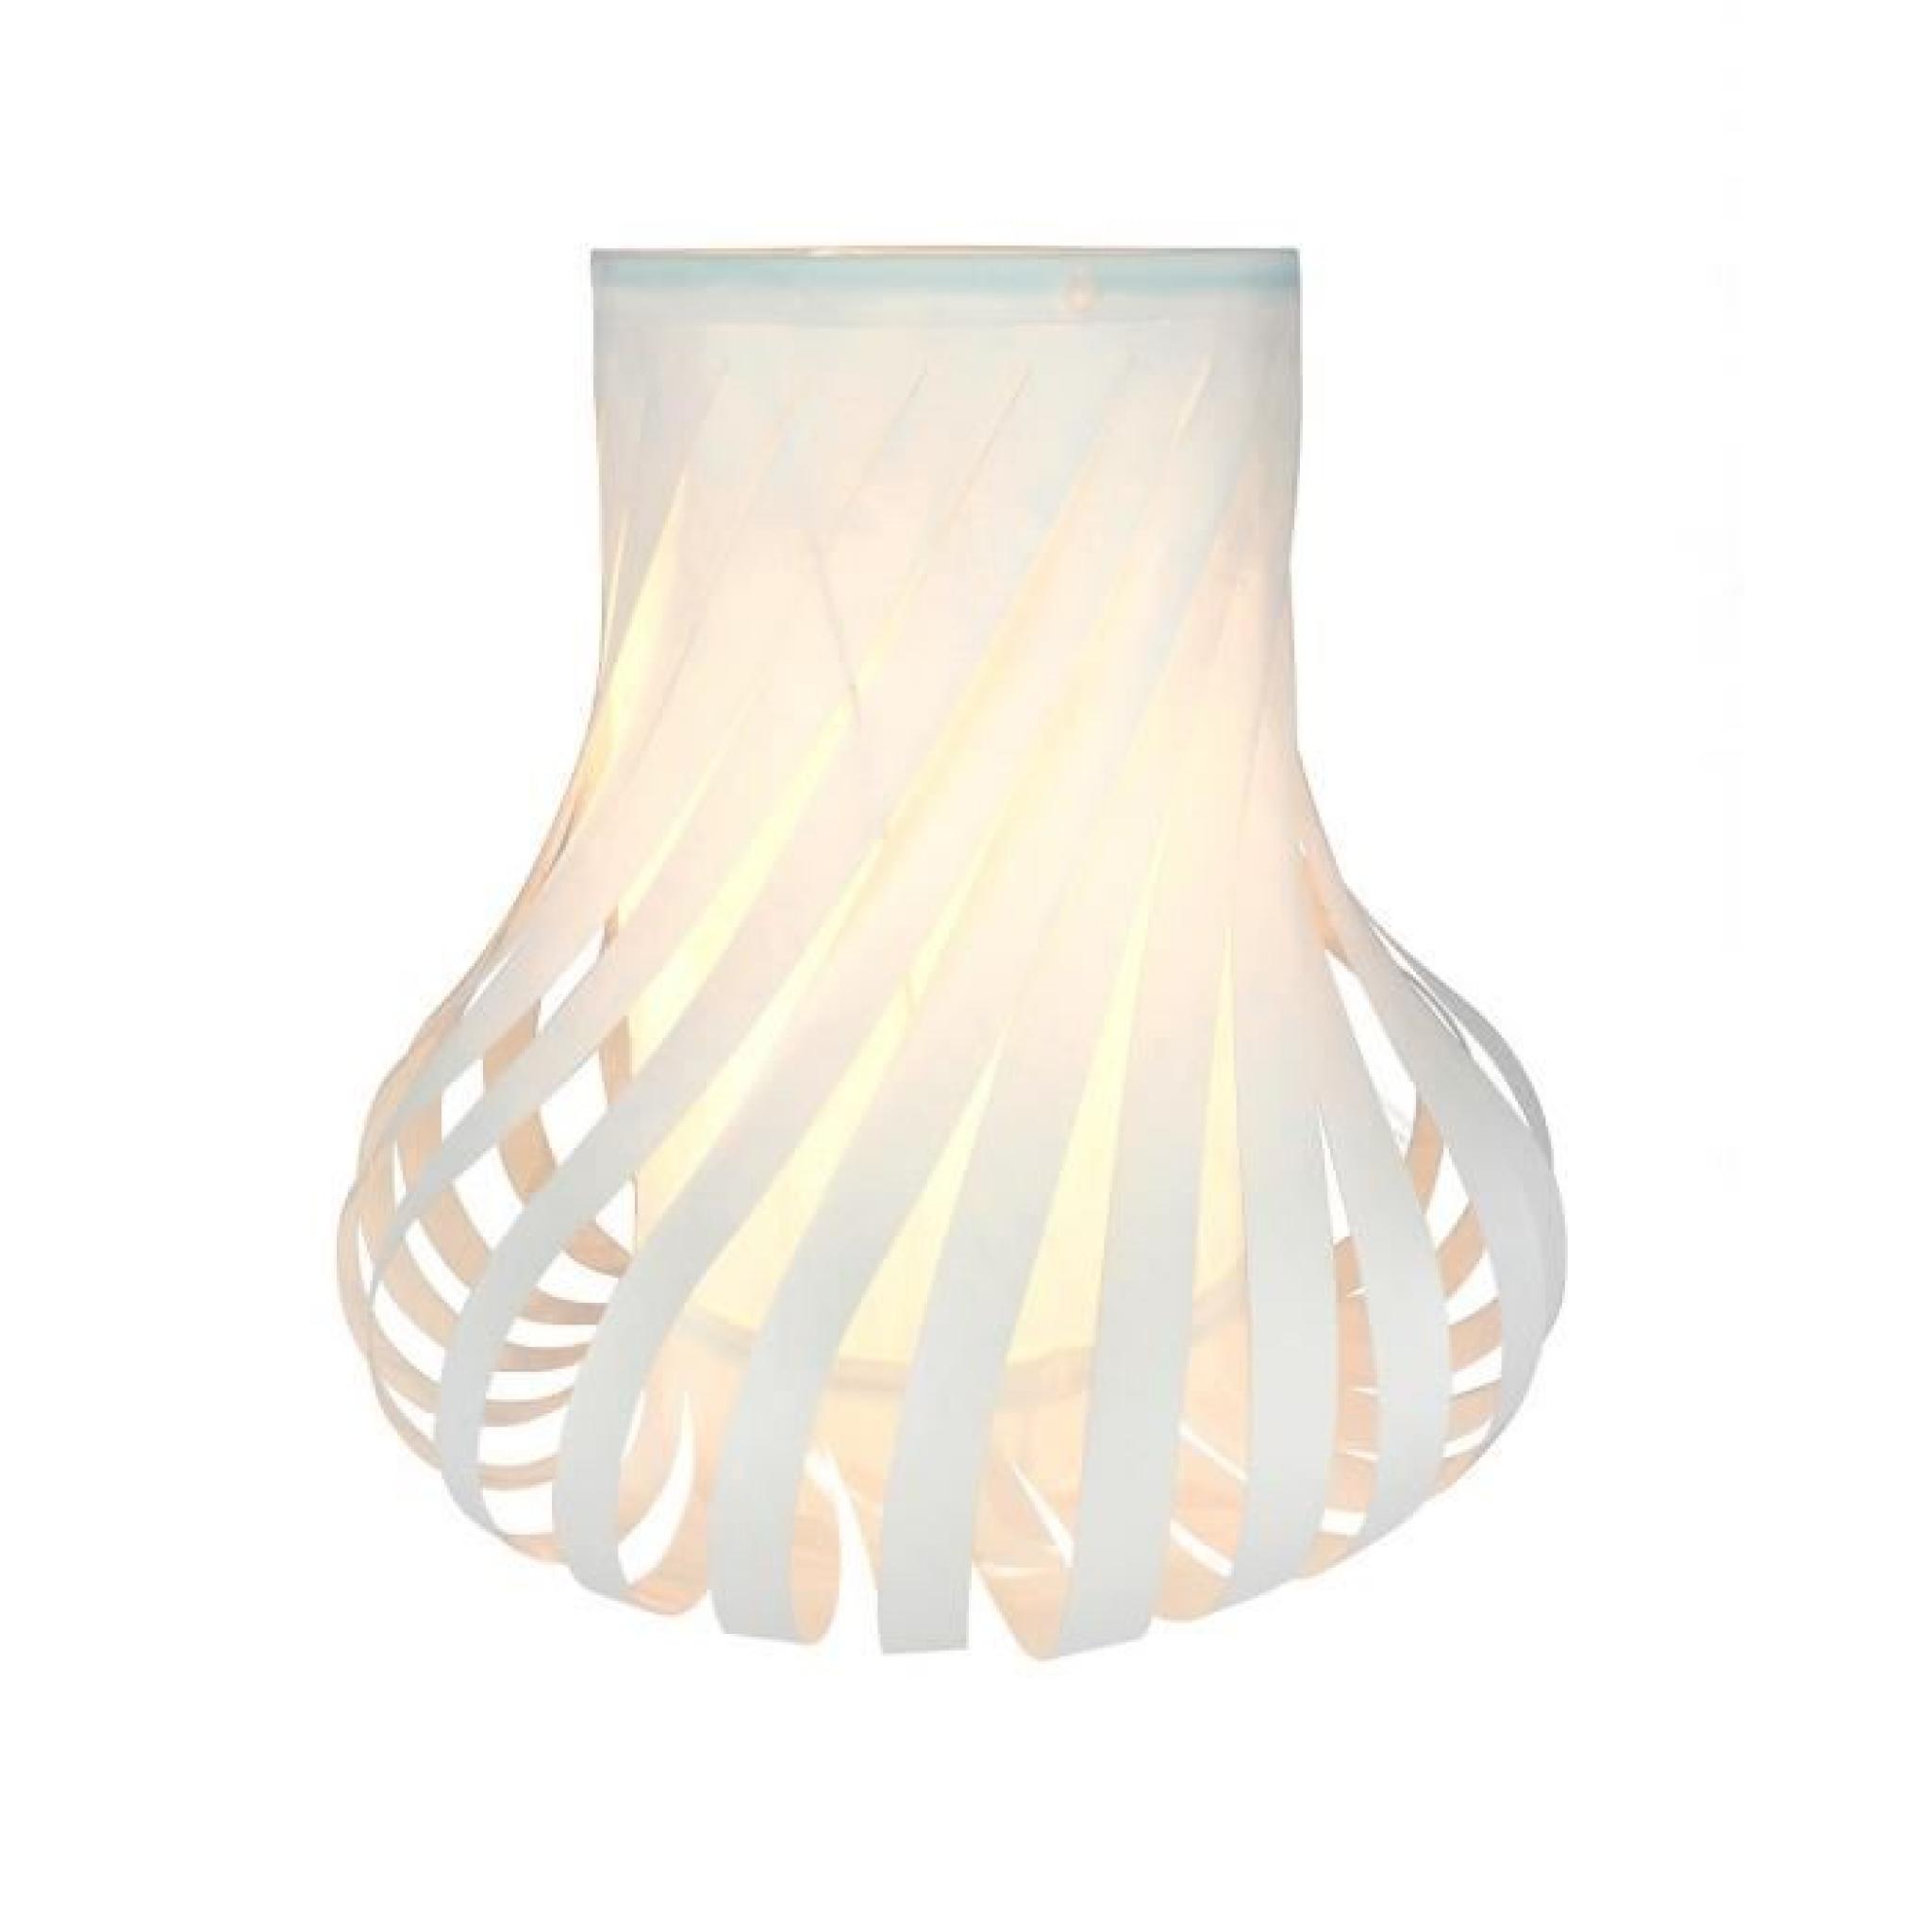 Lampe PVC E14 40W blanc